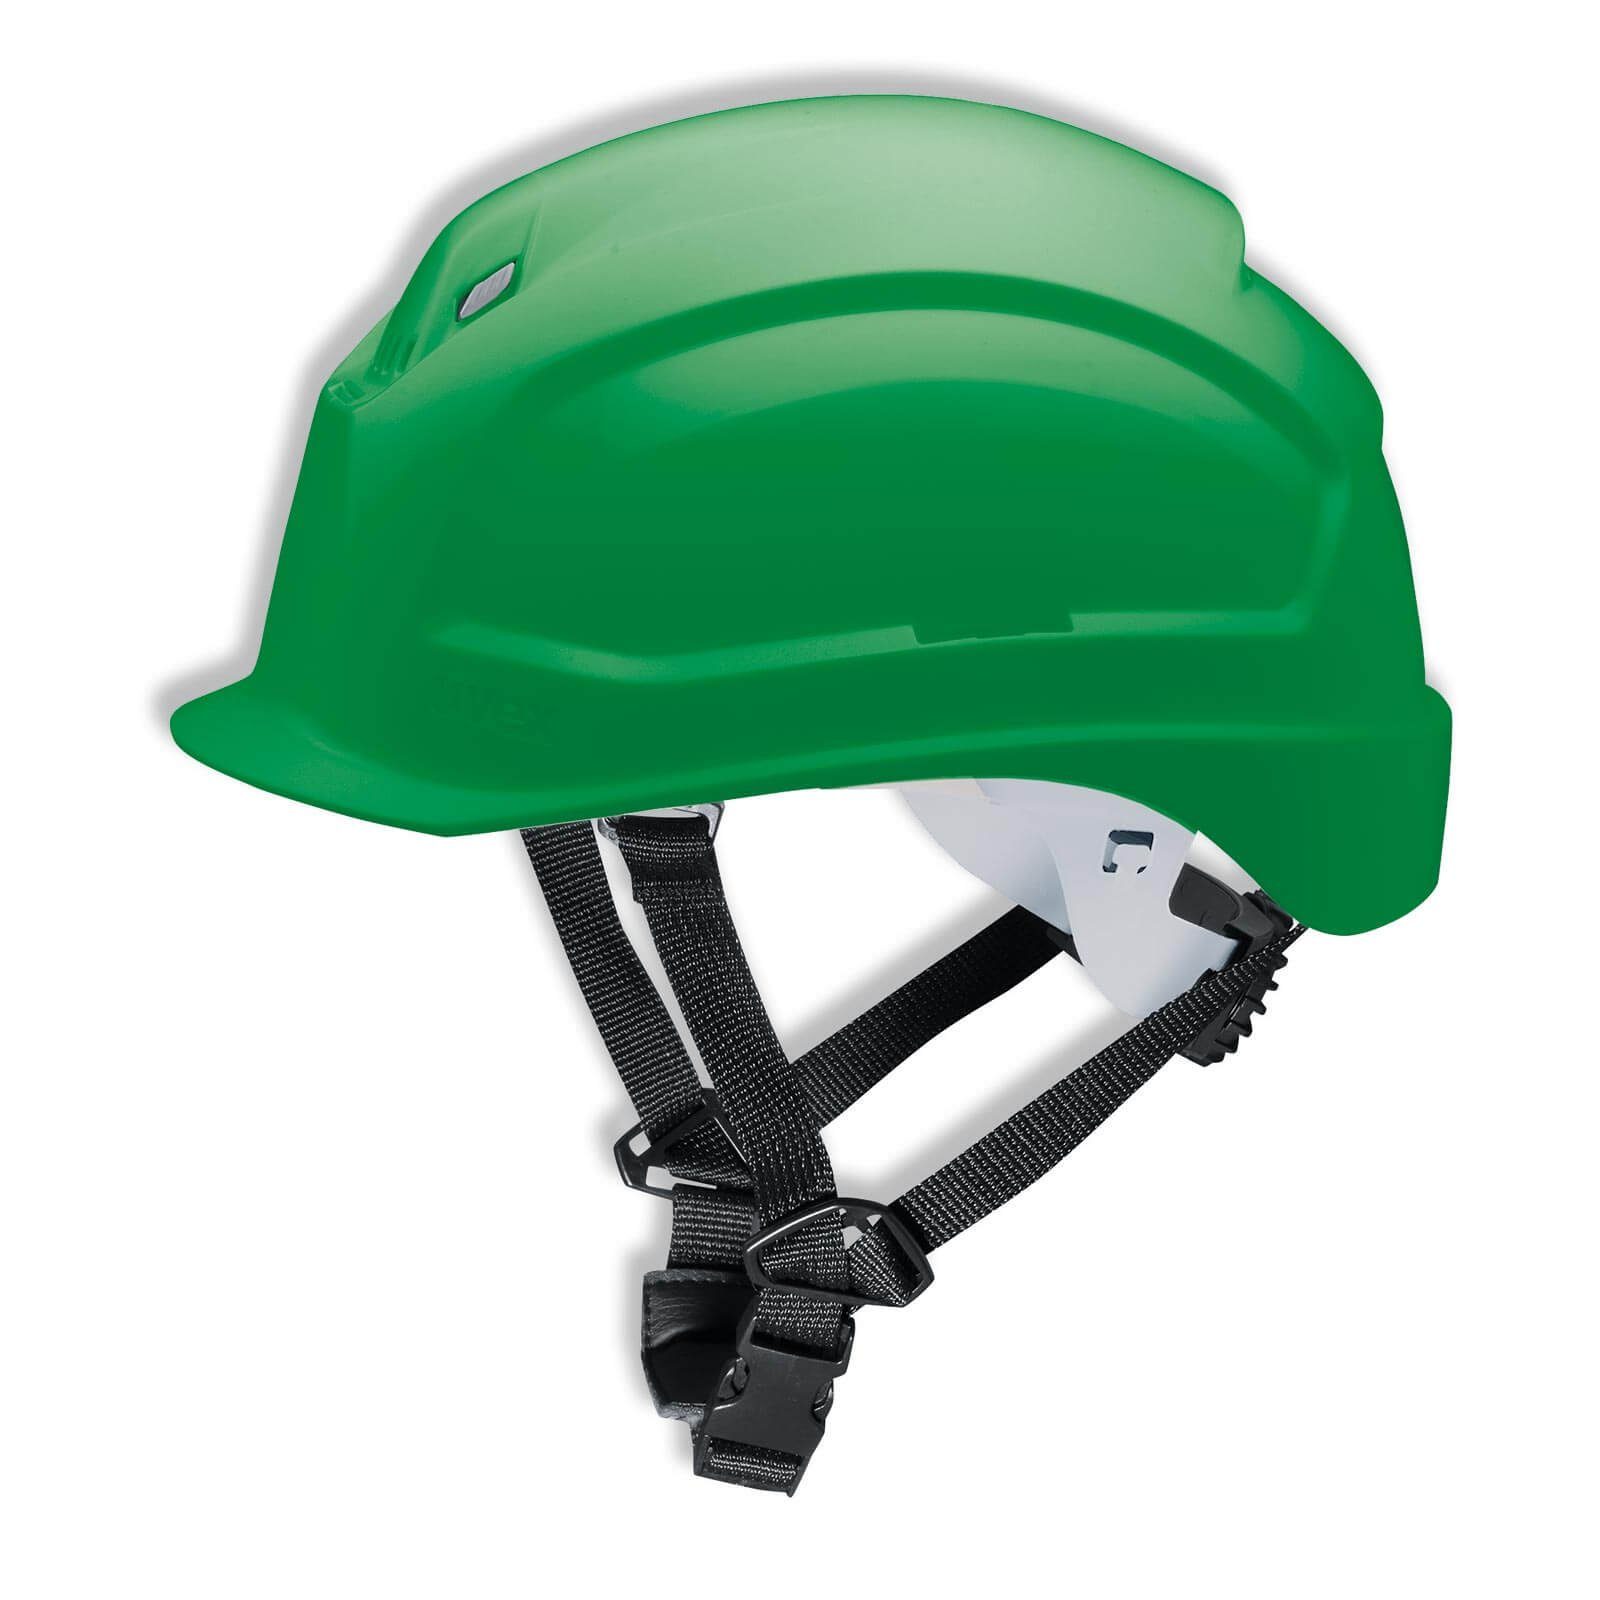 Uvex Schutzhelm grün Kinnriemen Vormontierter 4-Punkt S-KR Arbeitsschutz-Helm - pheos 